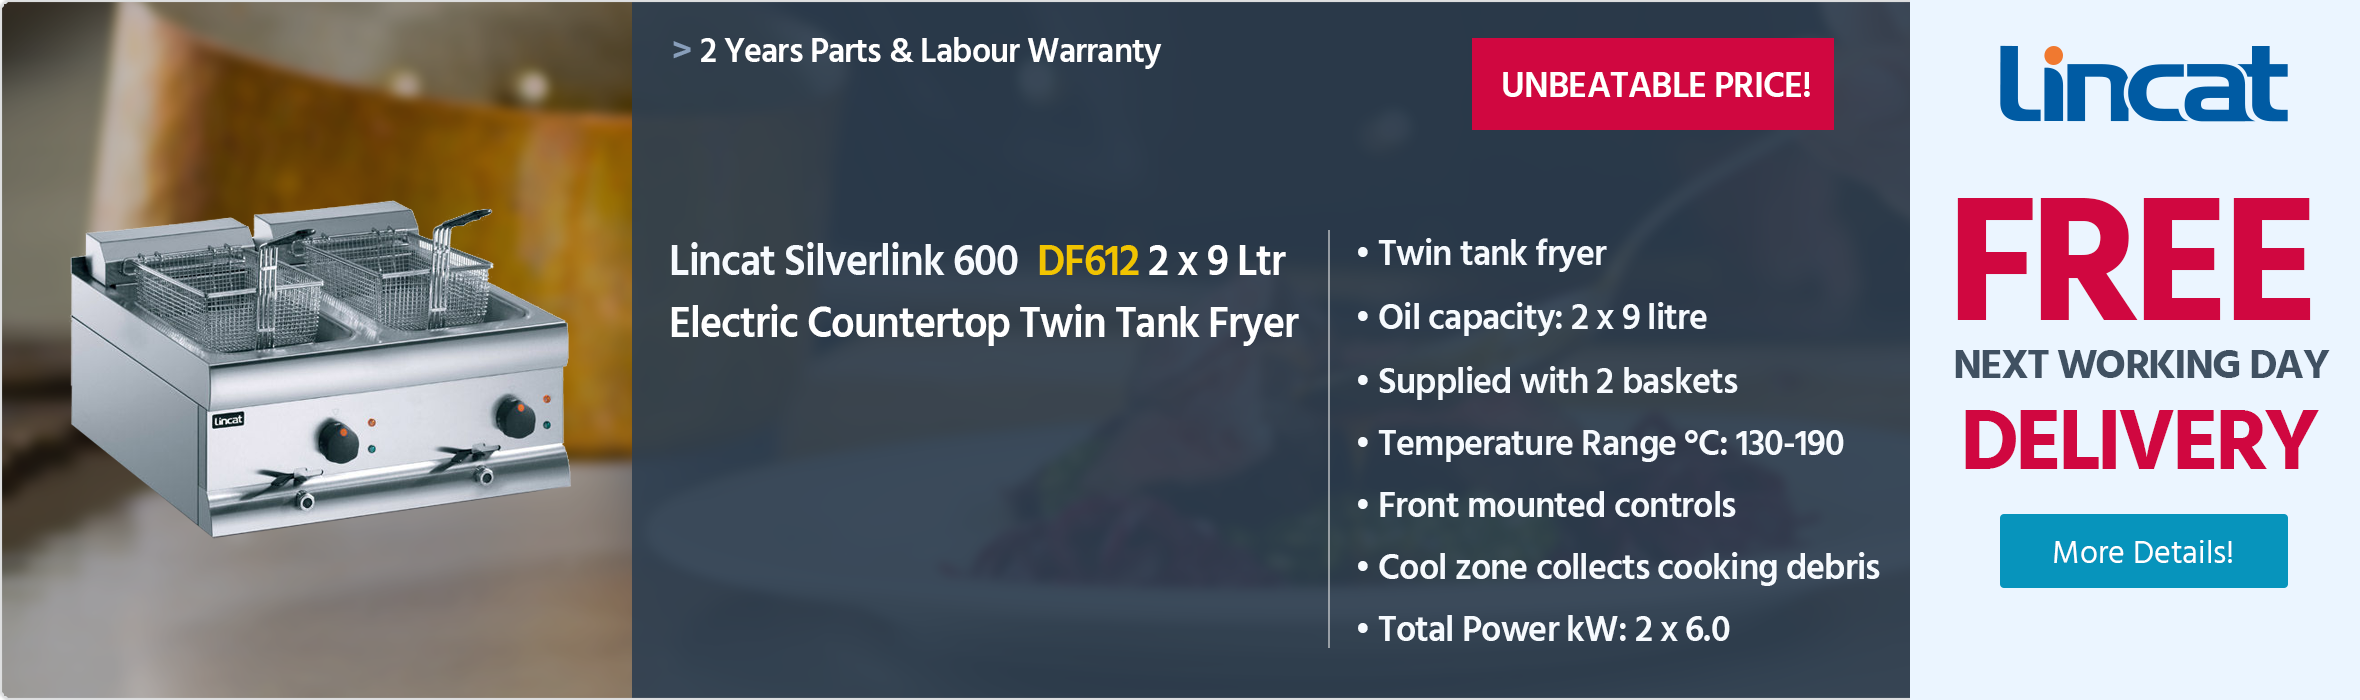 Lincat Silverlink 600 DF612 2 x 9 Ltr Electric Countertop Twin Tank Fryer (2 x Baskets)